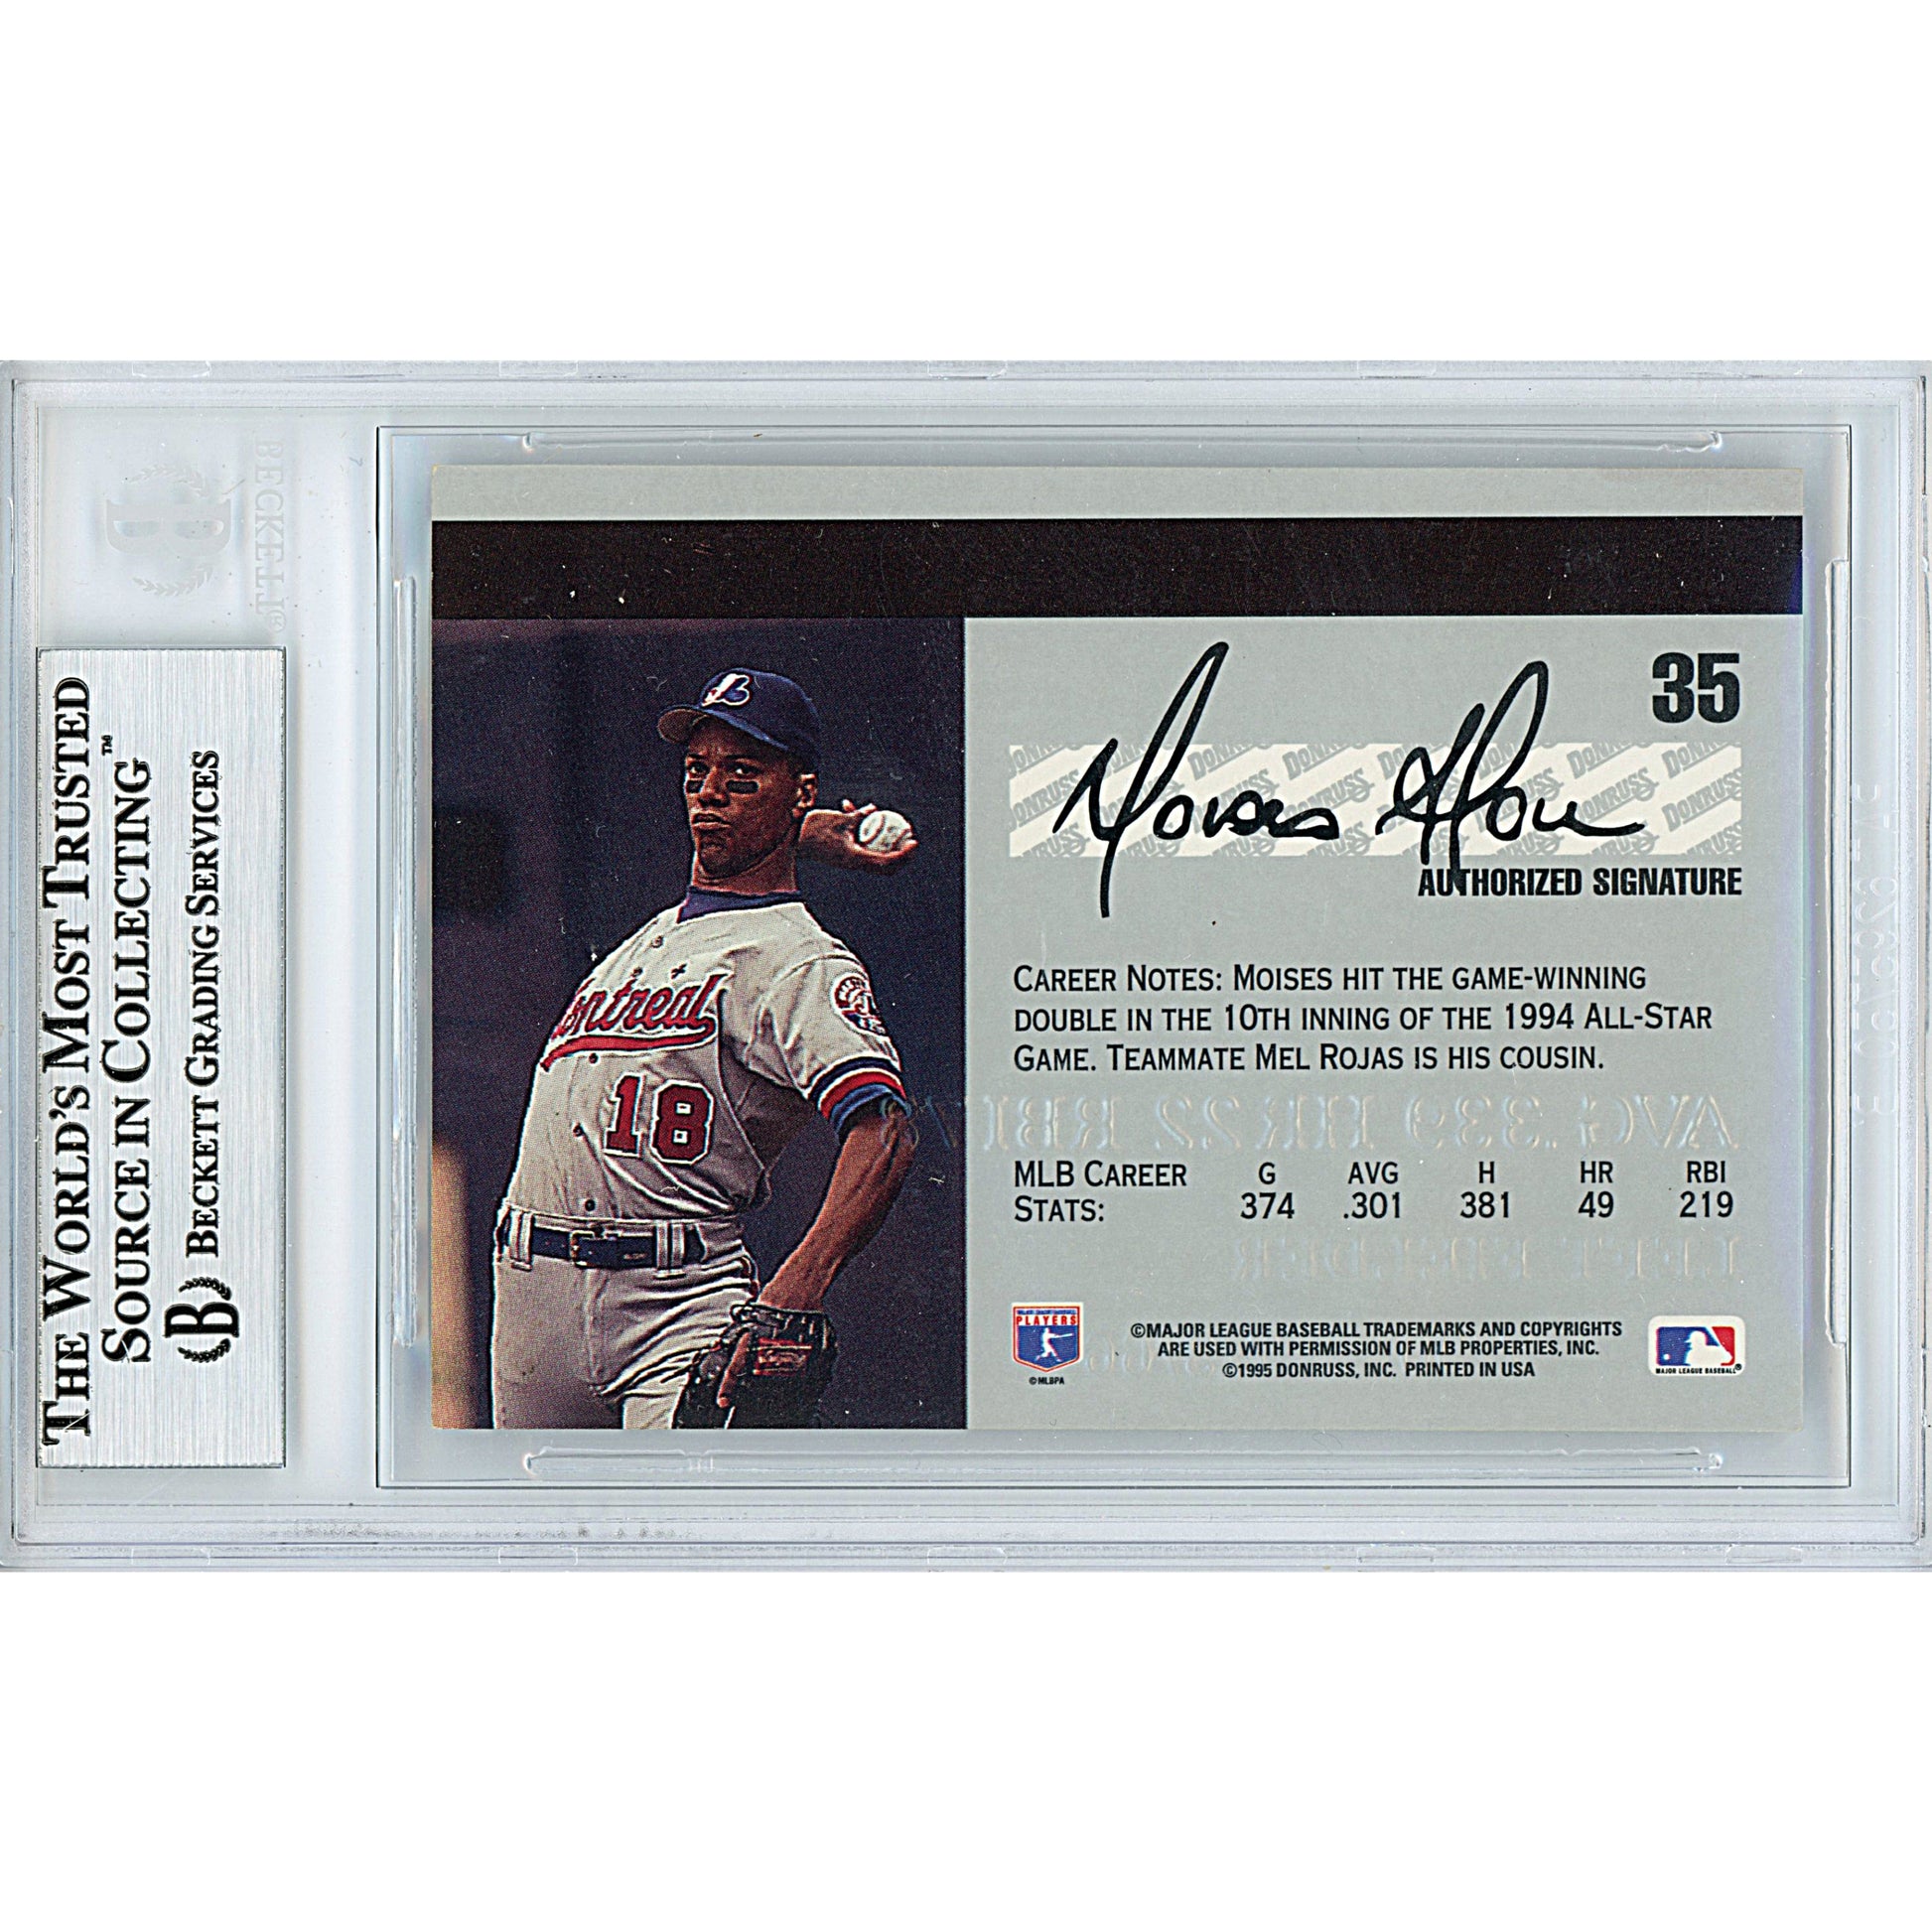 Baseballs- Autographed- Moises Alou Signed Montreal Expos 1995 Donruss Studio Baseball Card Beckett Slabbed 00013191018 - 103